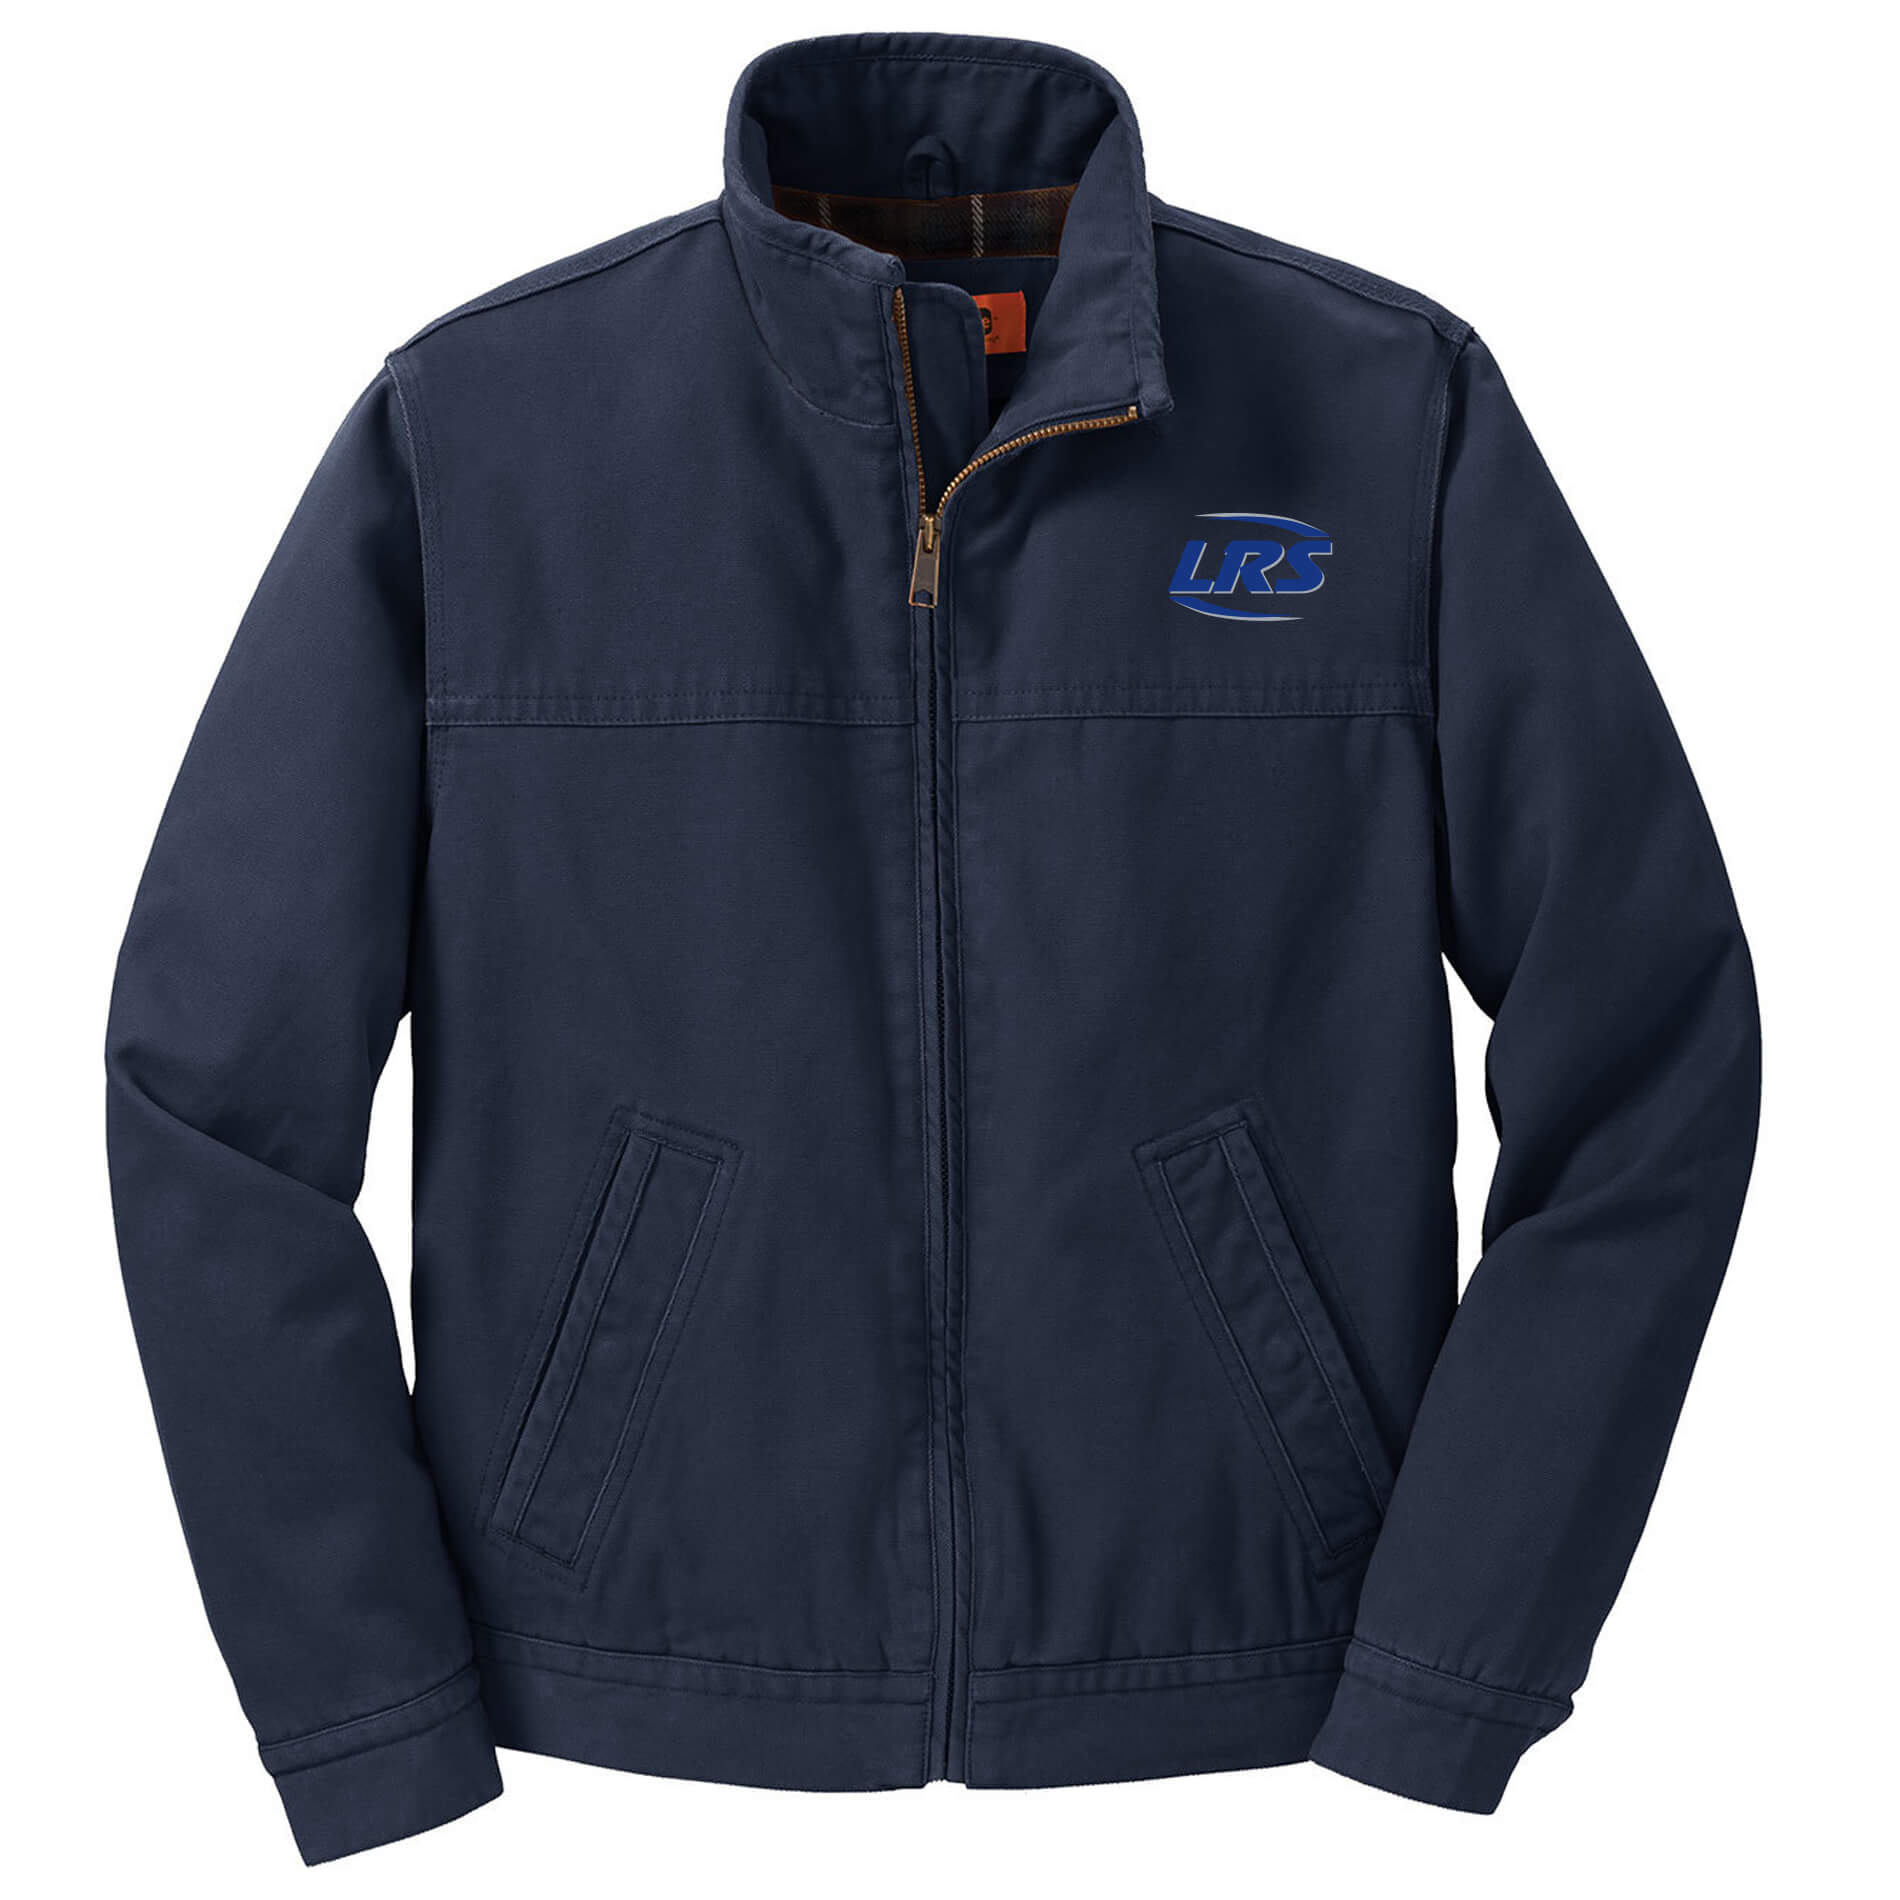 LRS Online Store: Men's Cornerstone Flannel Lined Jacket